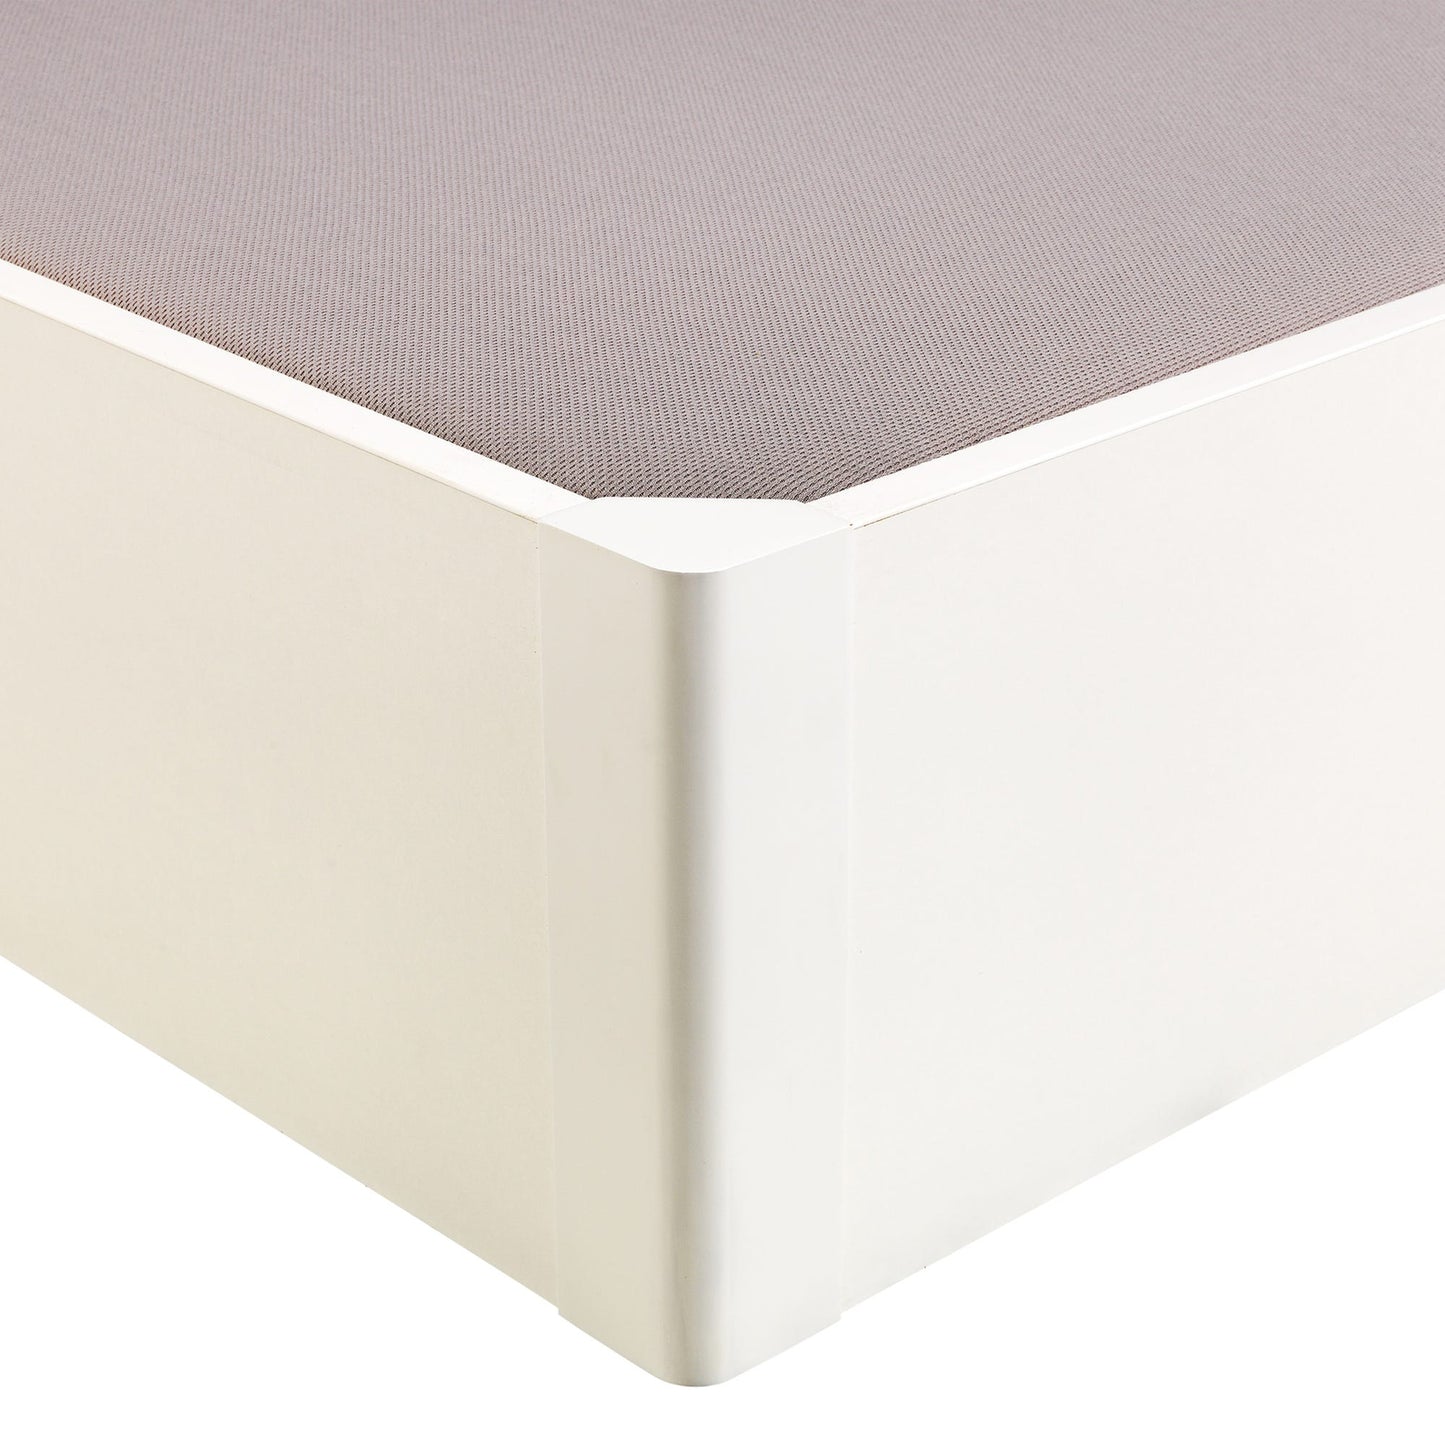 Canapé abatible de madera tapa única de color blanco - DESIGN - 105x190